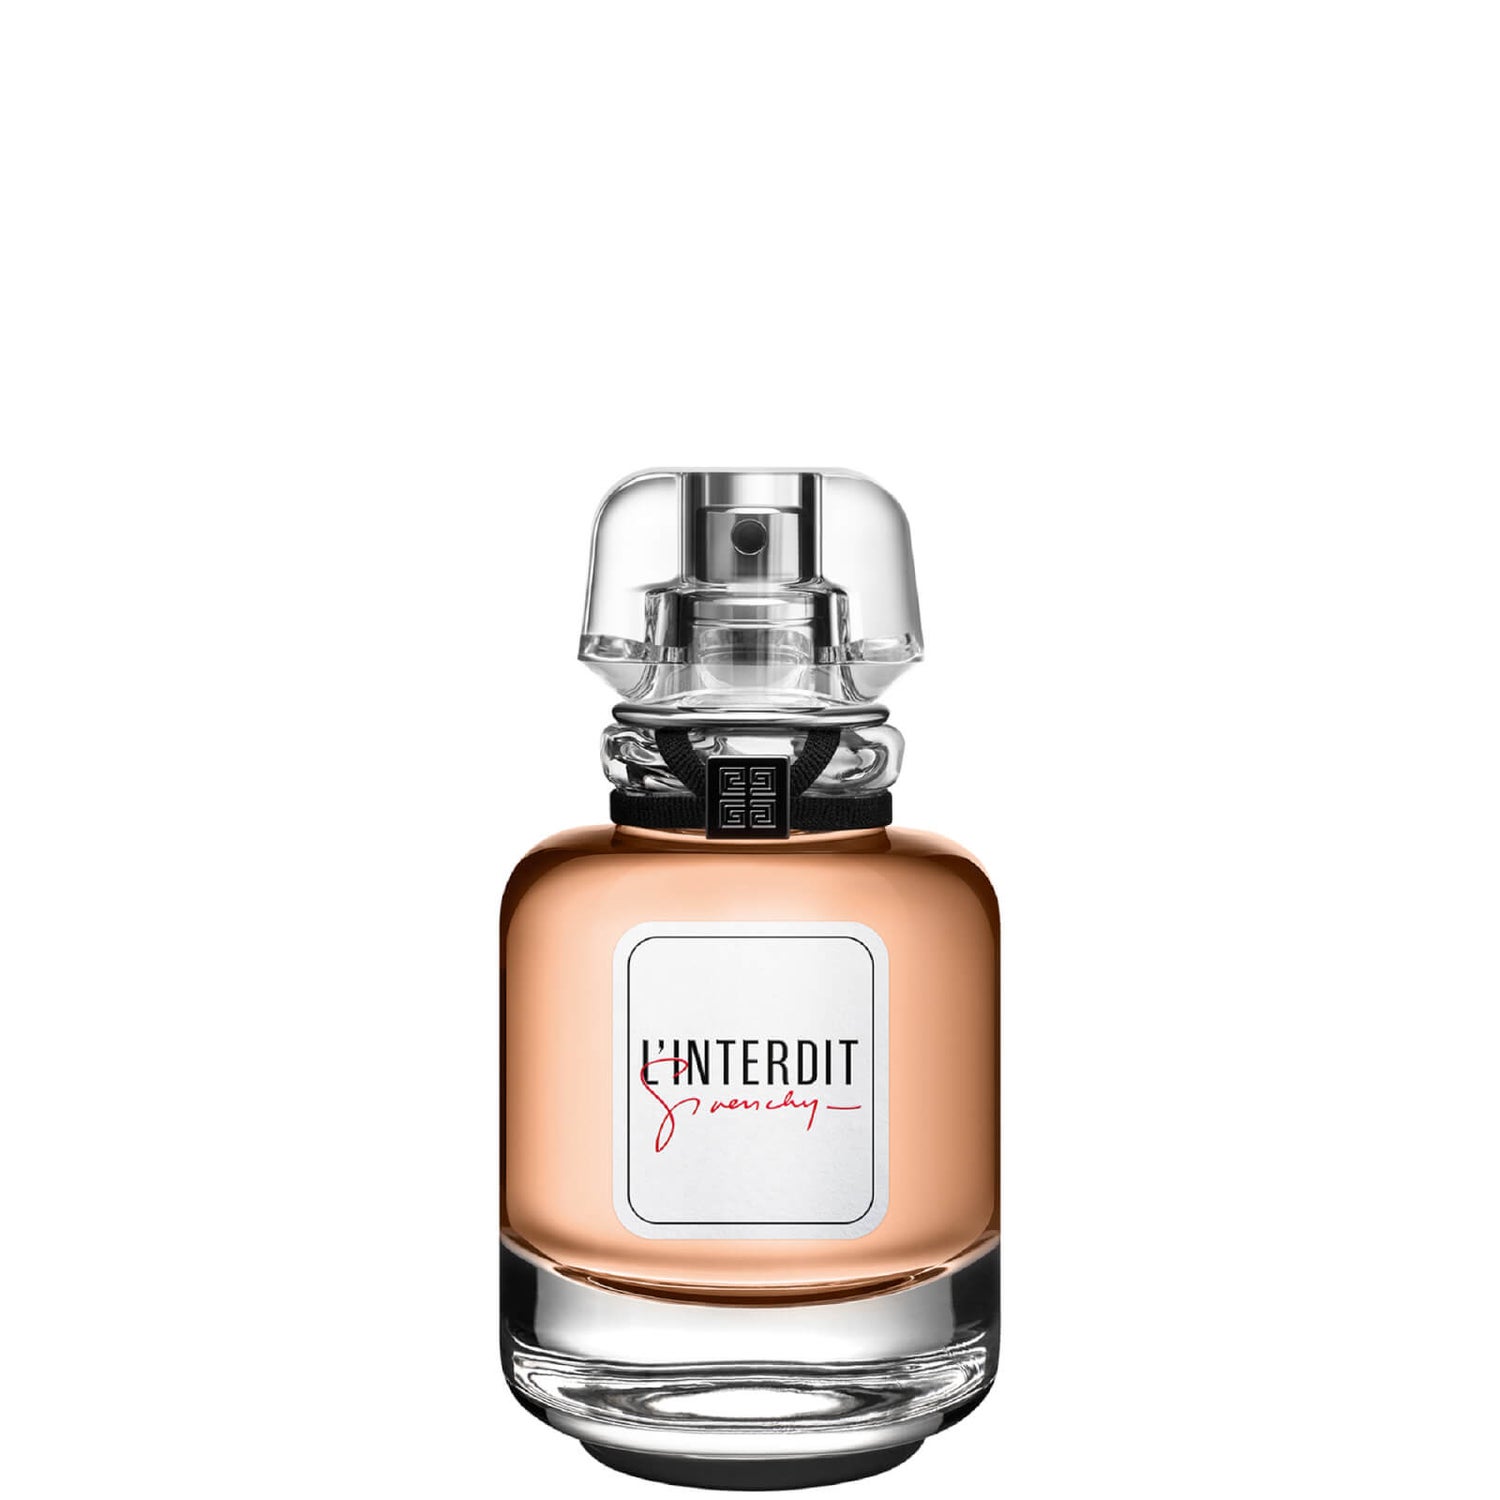 Givenchy L'Interdit Edition Millesime Eau de Parfum 50ml